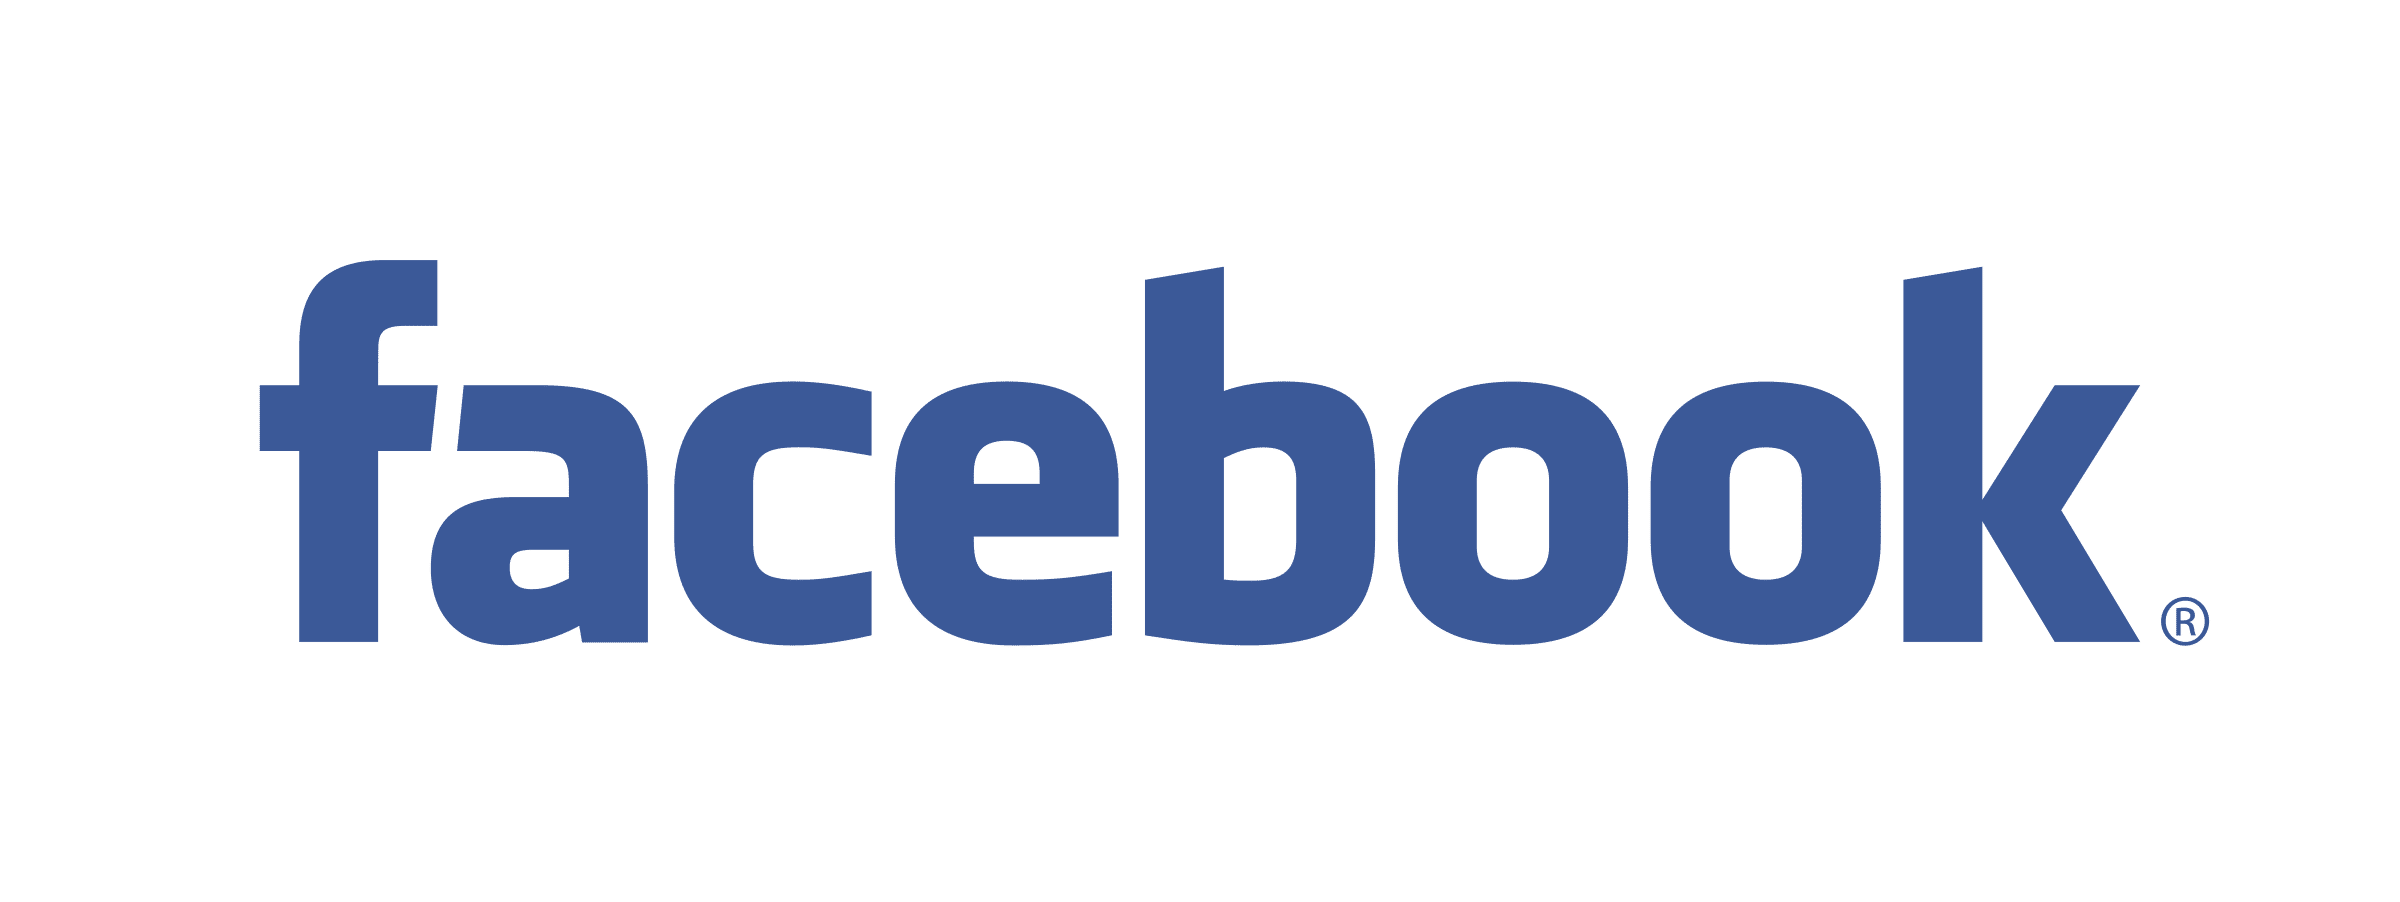 logo facebook facebook logo png transparent svg vector bie supply